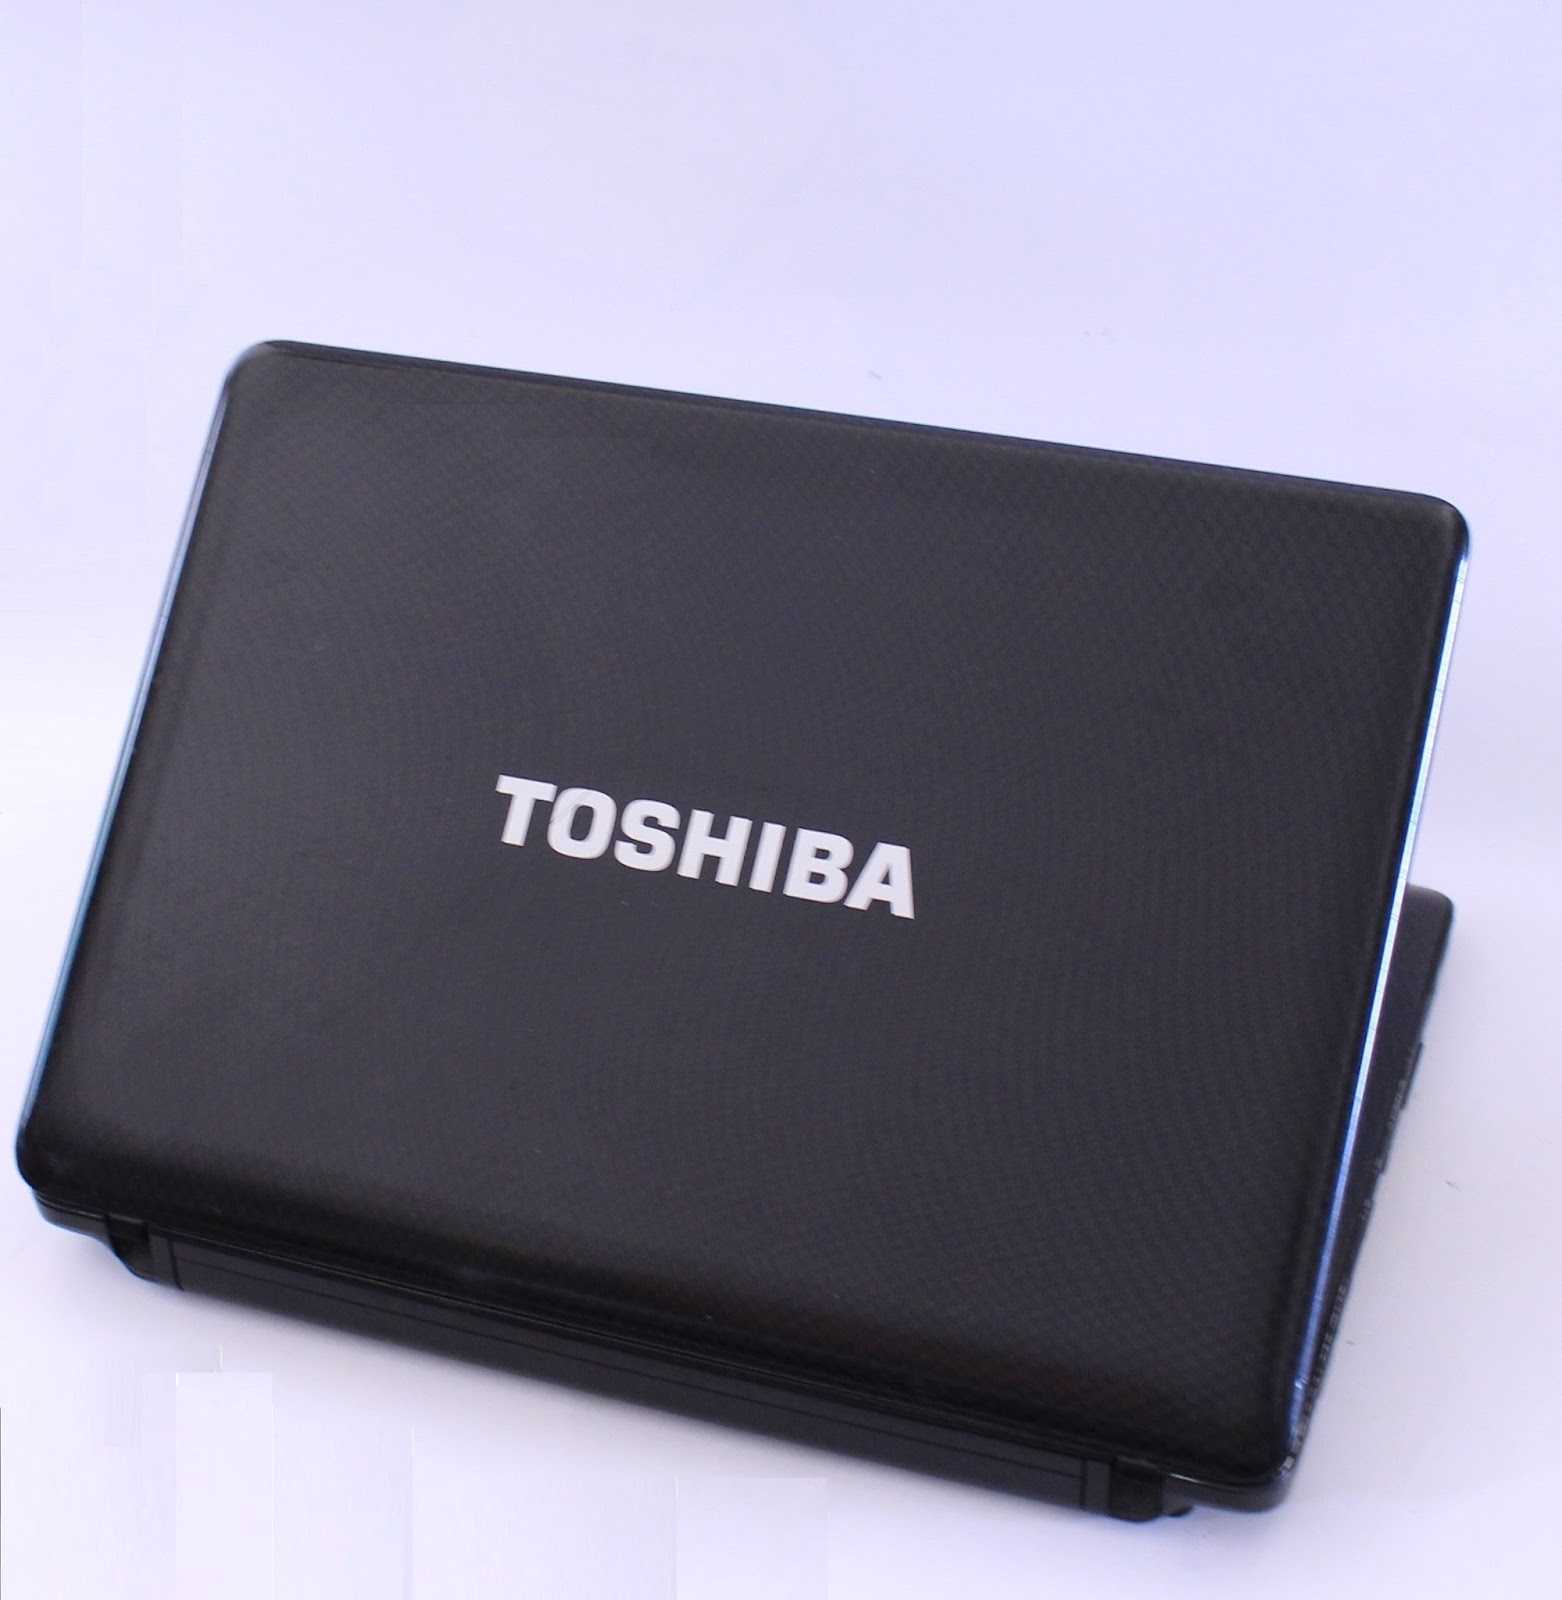 Ноутбук Toshiba Portege R935-P326 - подробные характеристики обзоры видео фото Цены в интернет-магазинах где можно купить ноутбук Toshiba Portege R935-P326